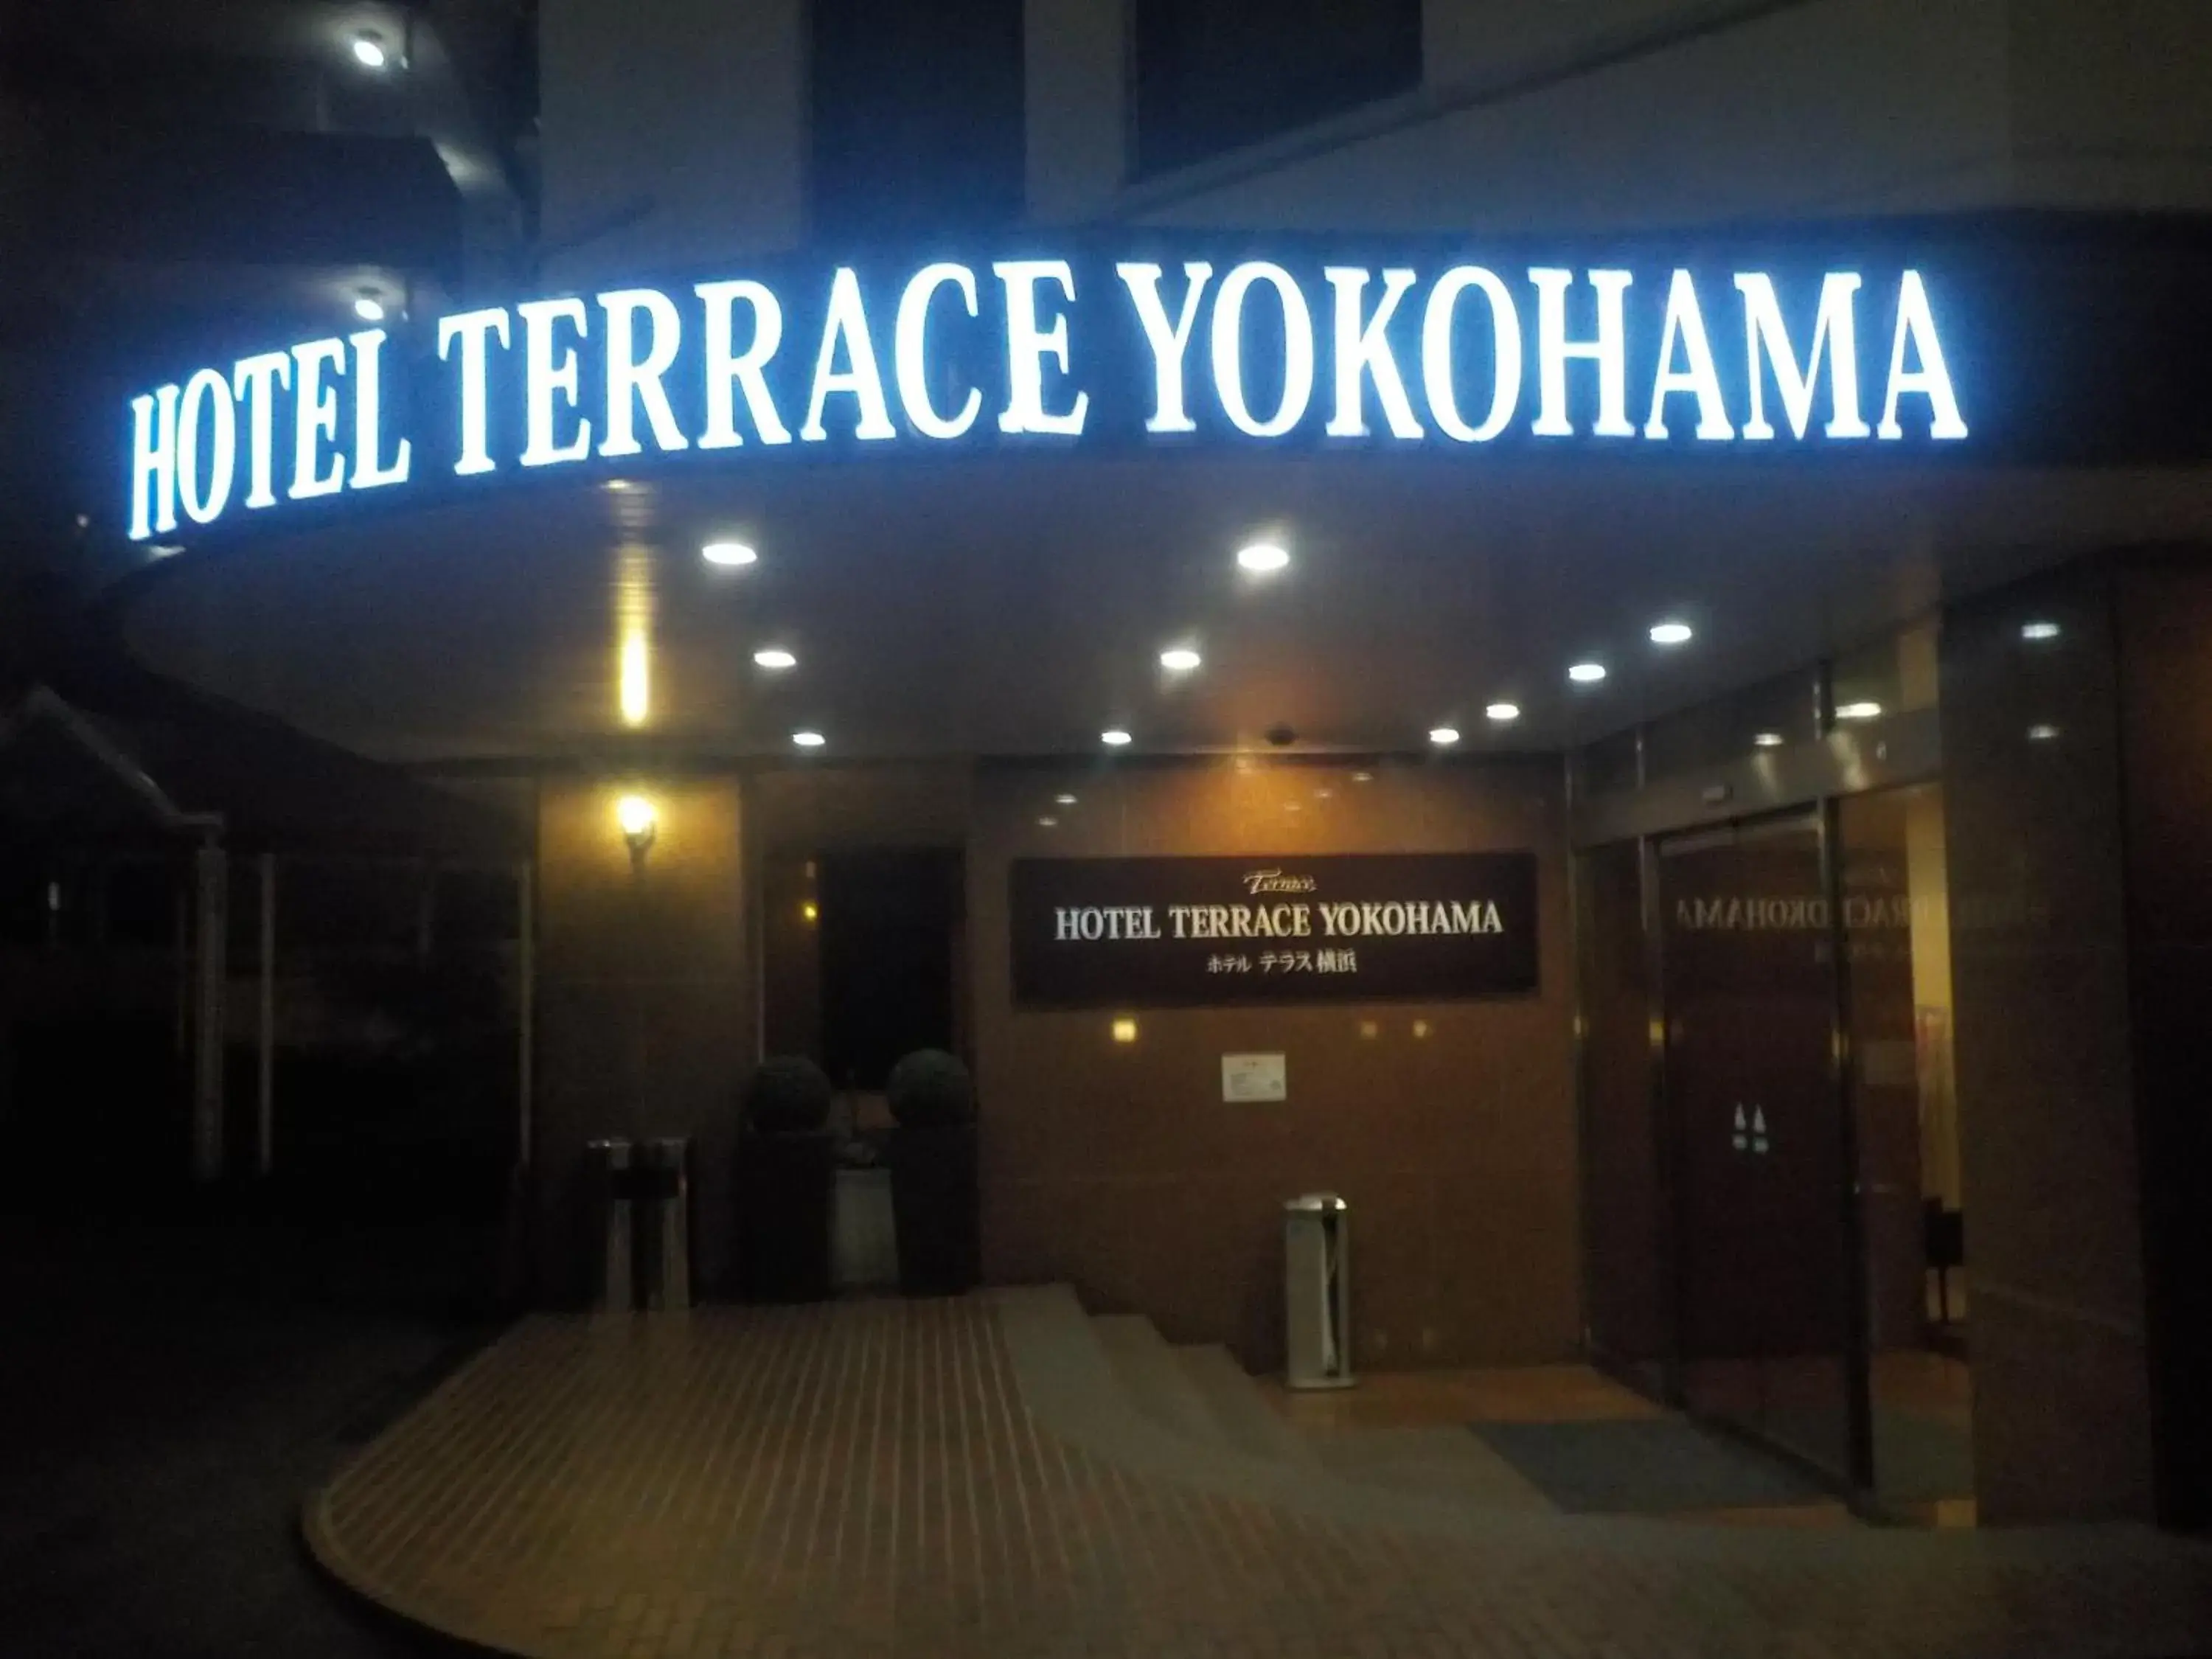 Facade/Entrance in Hotel Terrace Yokohama